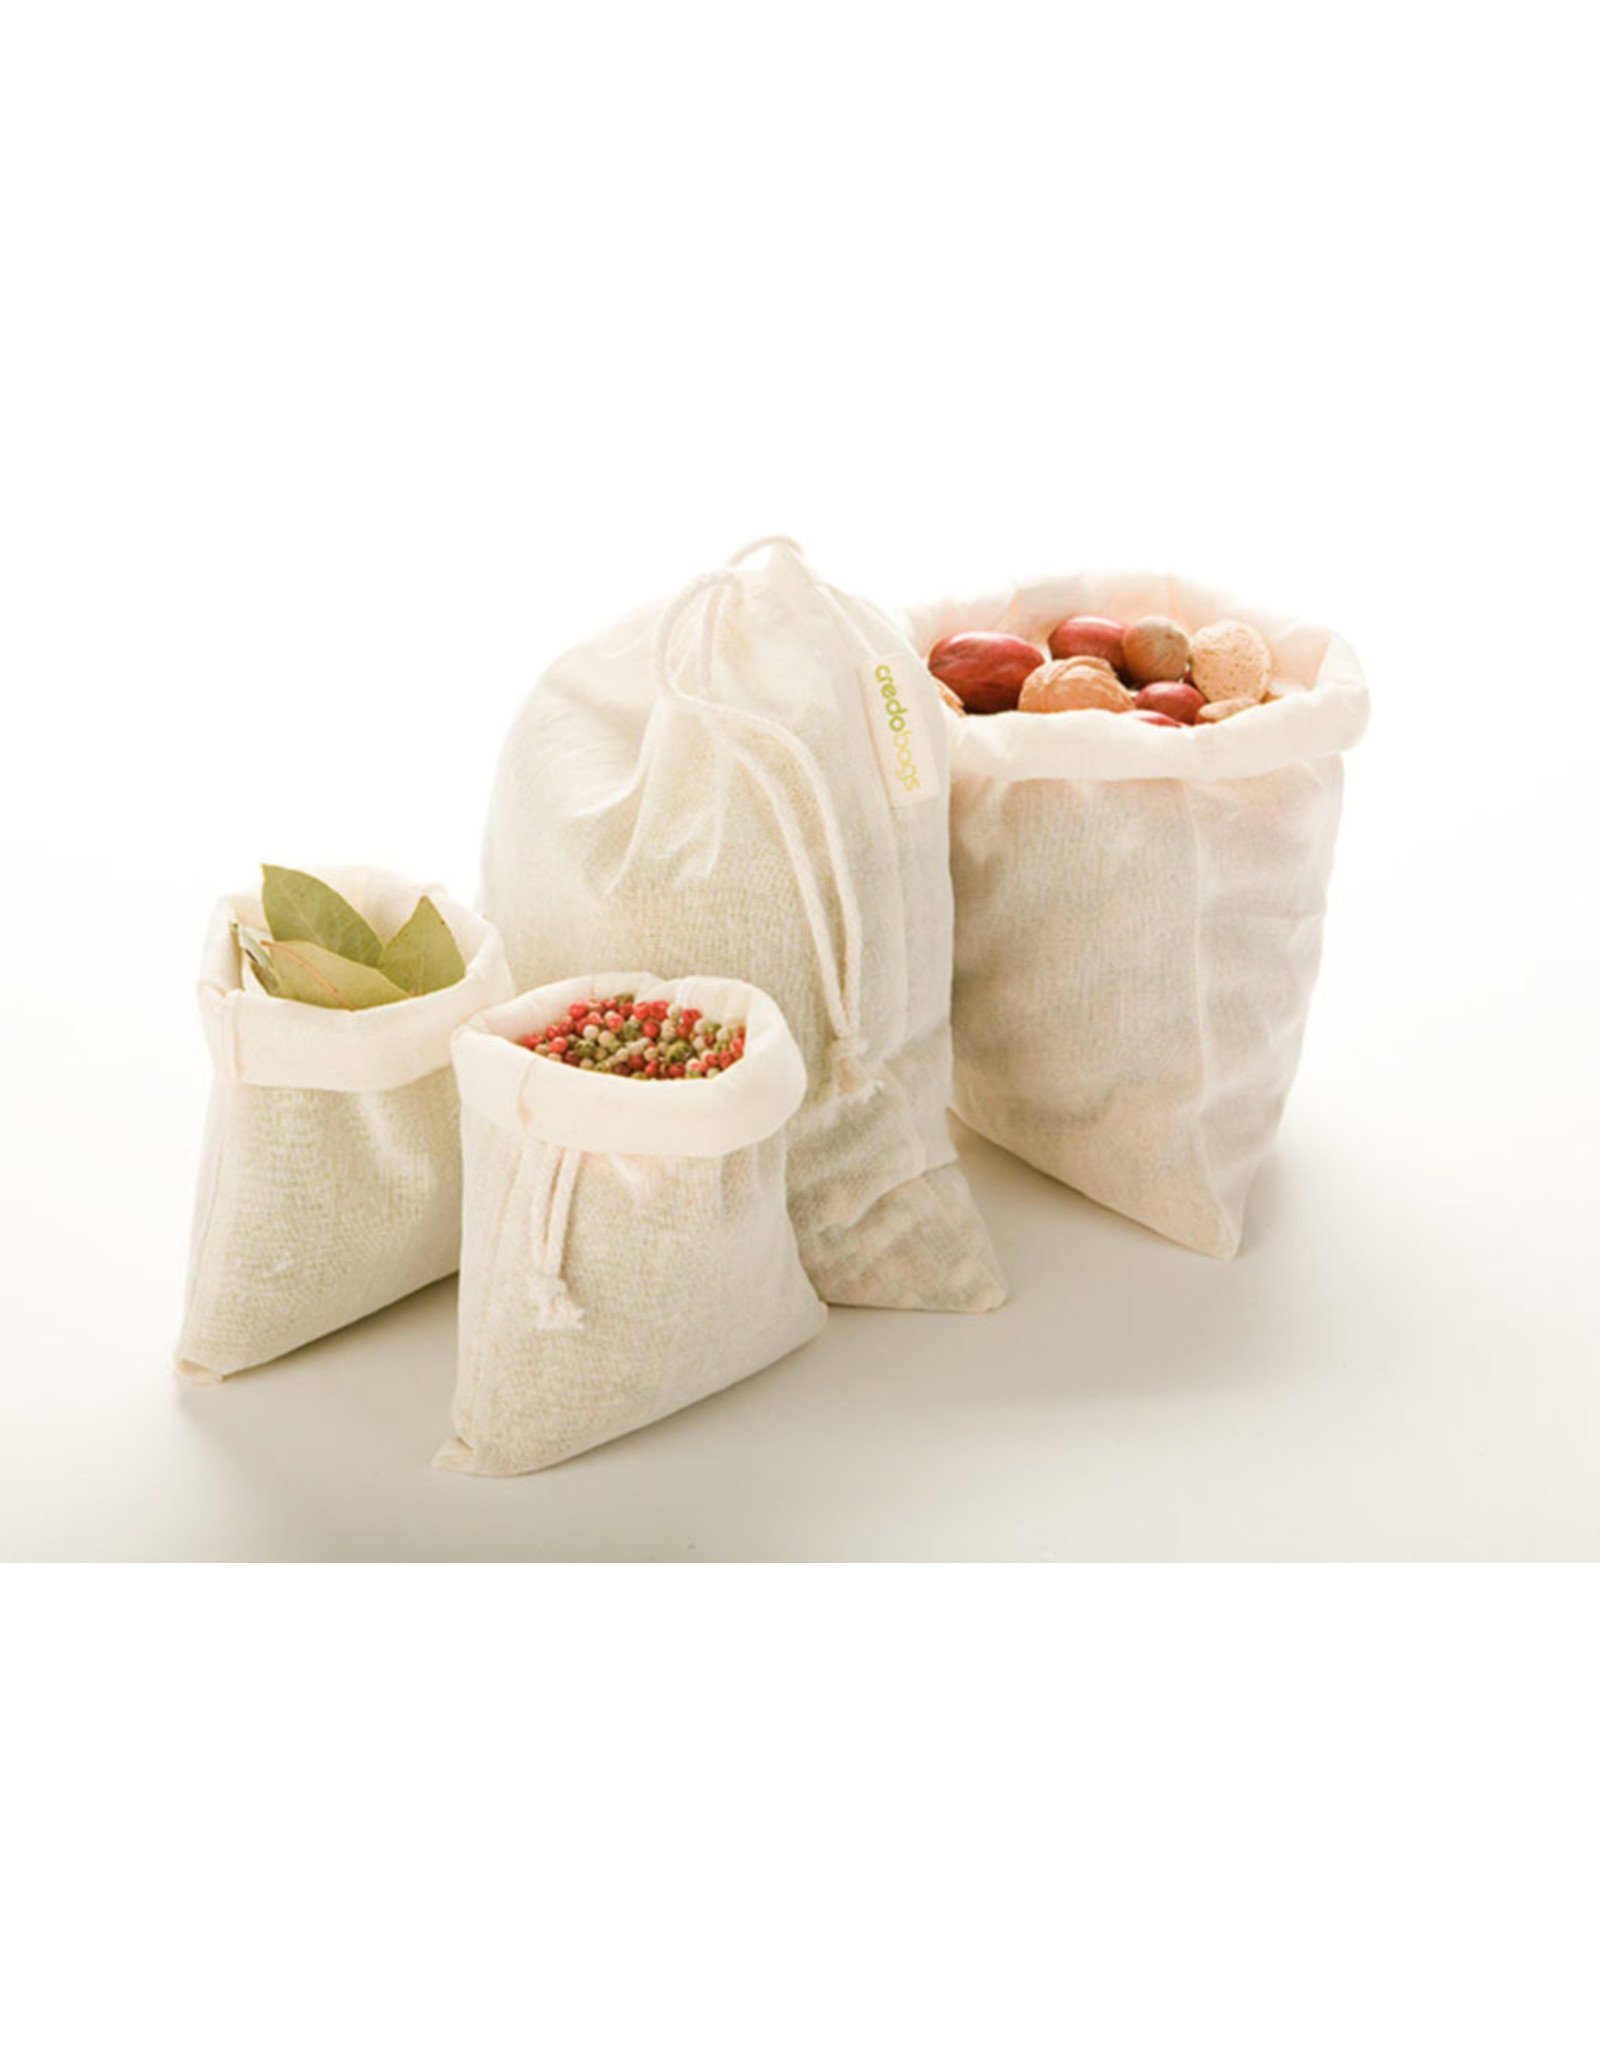 Credo Bags Zero-Waste Starter Set - 5 Reusable Produce and Bulk Bags